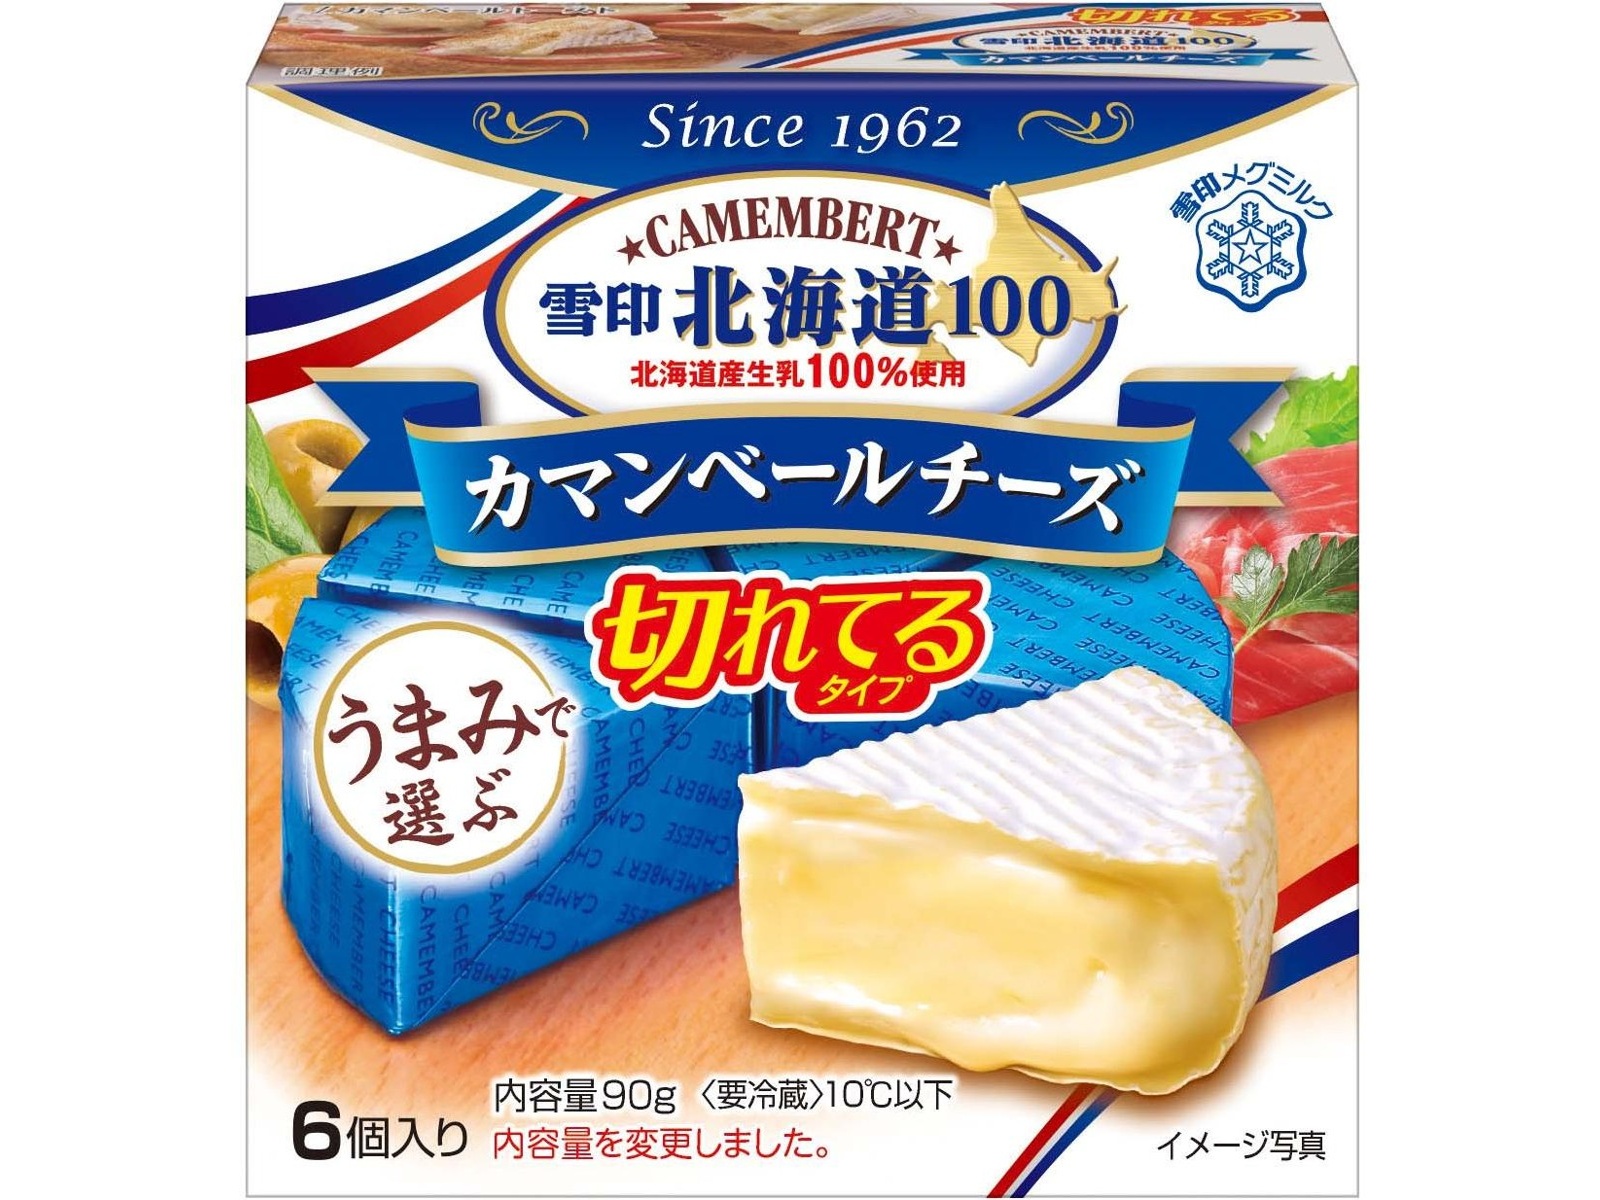 雪印メグミルク 雪印北海道100 カマンベールチーズ切れてるタイプ 90g